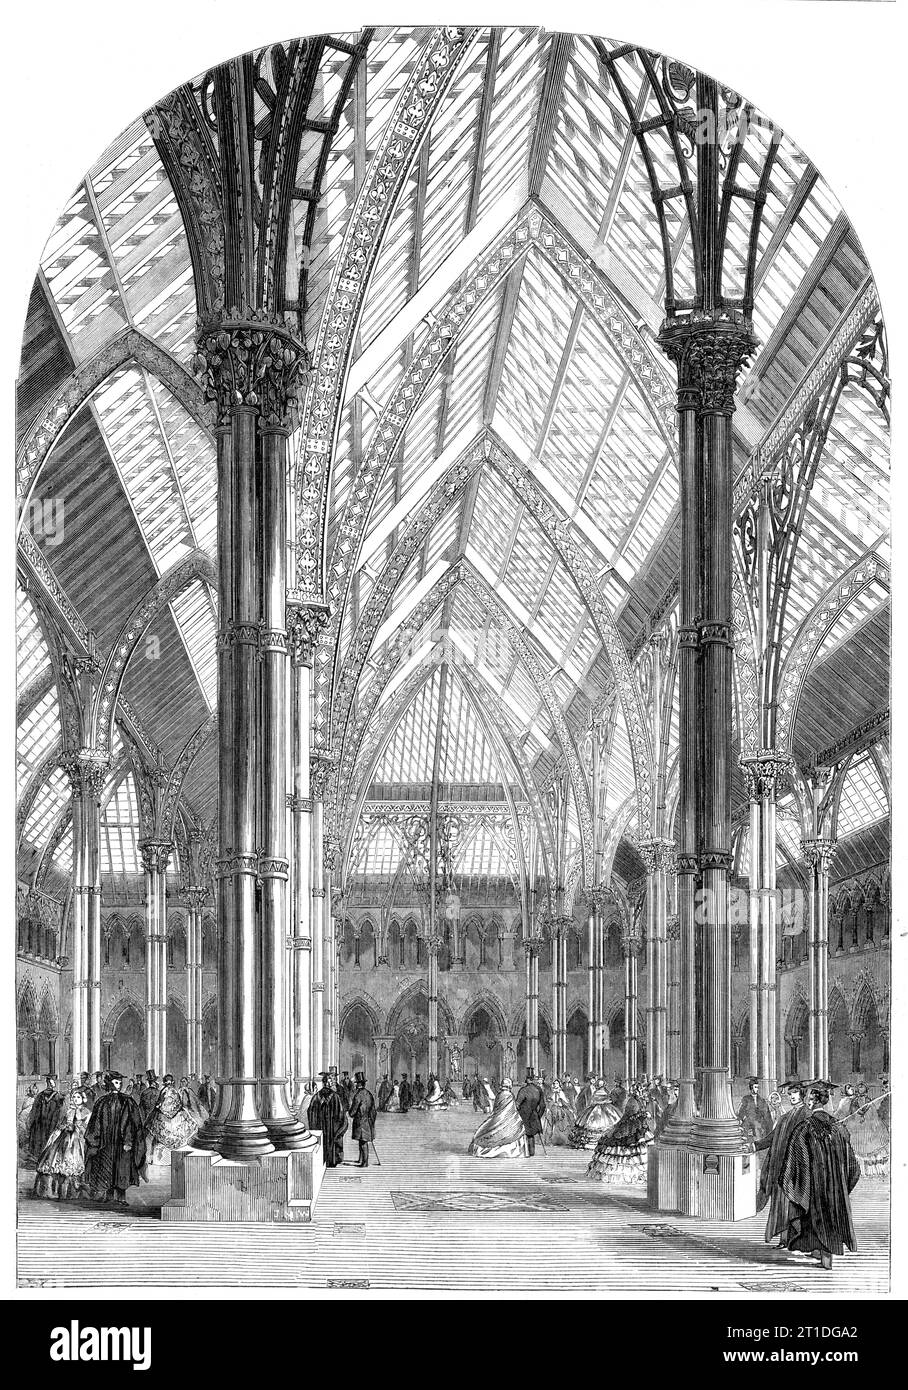 The Central Court and Arcades of the Oxford University Museum, 1860. Das Gebäude wurde von Thomas Newenham Deane und Benjamin Woodward entworfen. "Das Zentrum des Gebäudes, das die verschiedenen Sammlungen beherbergen soll, besteht aus einem geräumigen Viereck mit 112 Quadratmetern, das von einem Glasdach bedeckt ist, das auf gusseisernen Säulen gestützt ist, selbst eine neue Idee und ein etwas zweifelhaftes Experiment in der strukturellen Anordnung in der gotischen Architektur. Der dekorative Teil des Daches ist aus Schmiedeeisen und wurde von Mr. Skidmore aus Coventry ausgeführt. In den Spandrils nimmt es die Form von verflochtenen Zweigen an, Stockfoto